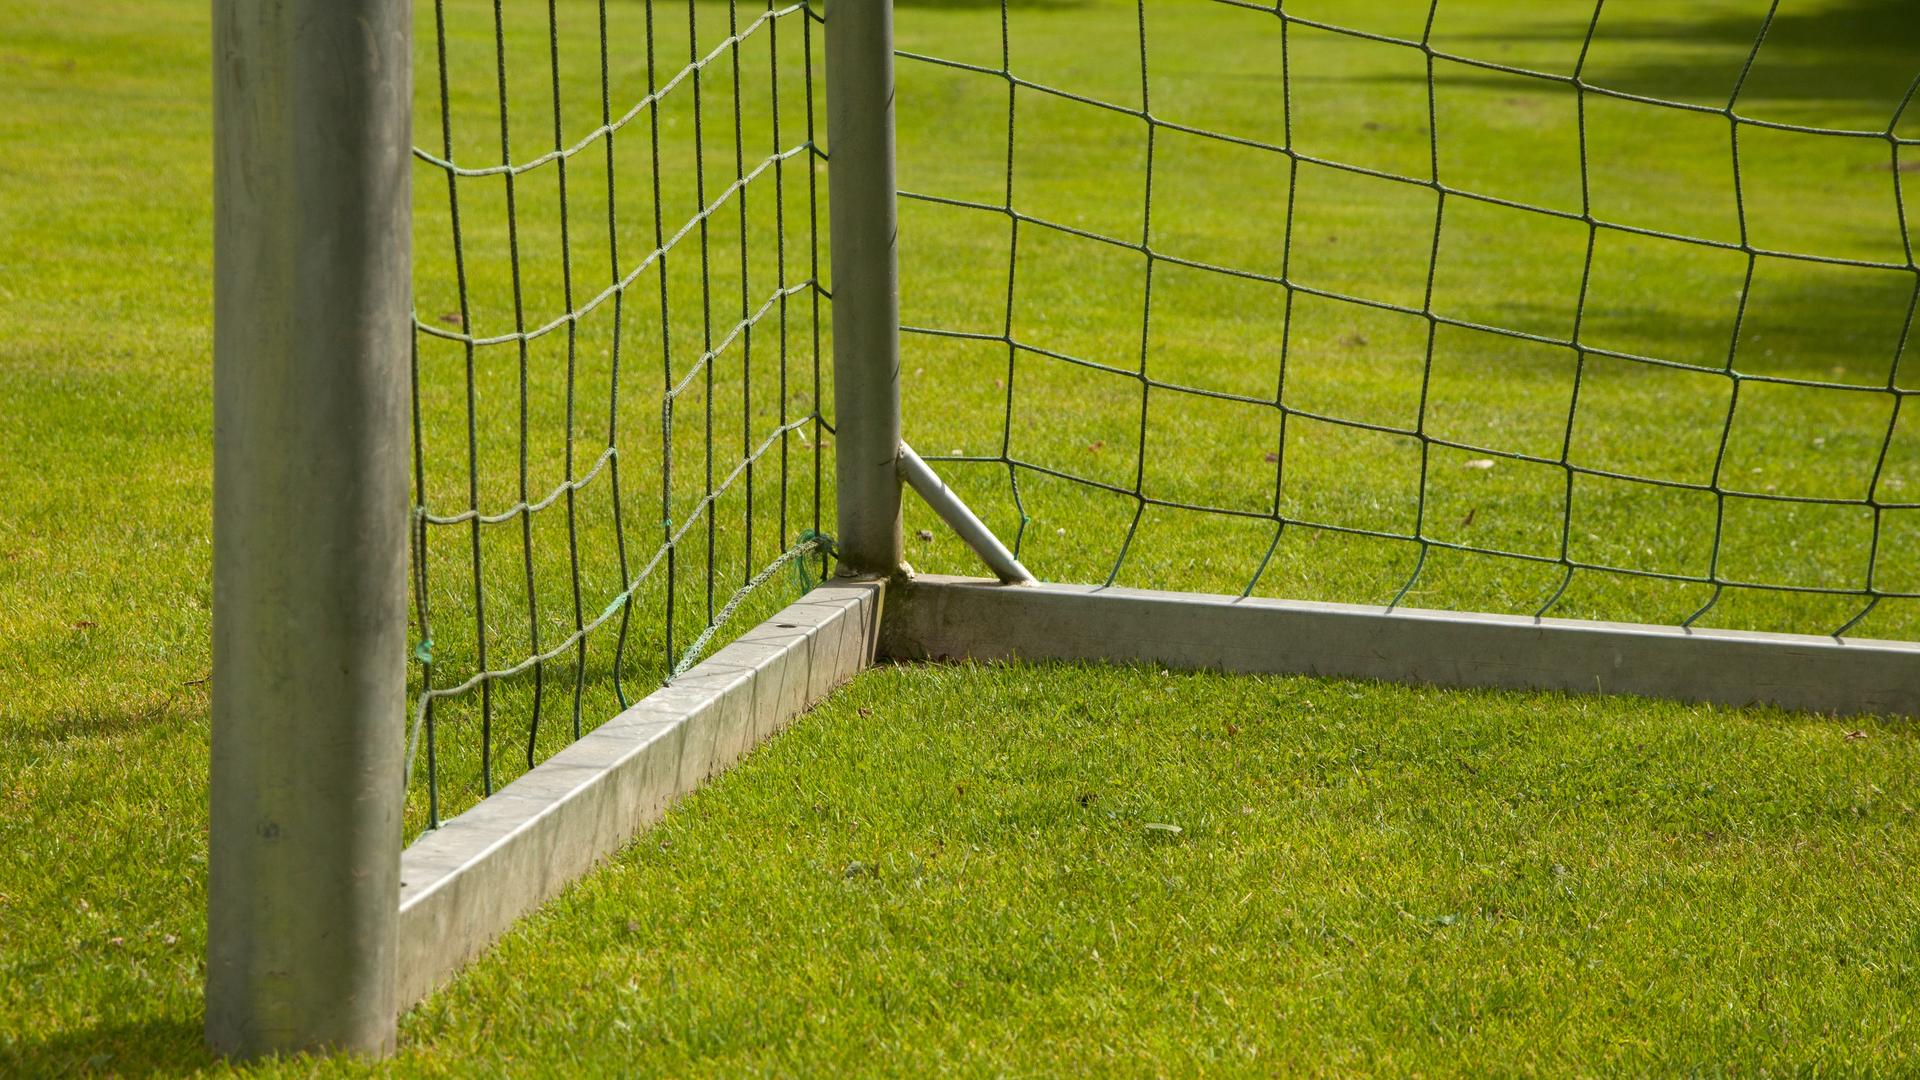 Ein Fußball-Tor steht auf grünem Rasen. Man sieht nur eine Ecke des Tores, nicht das gesamte.